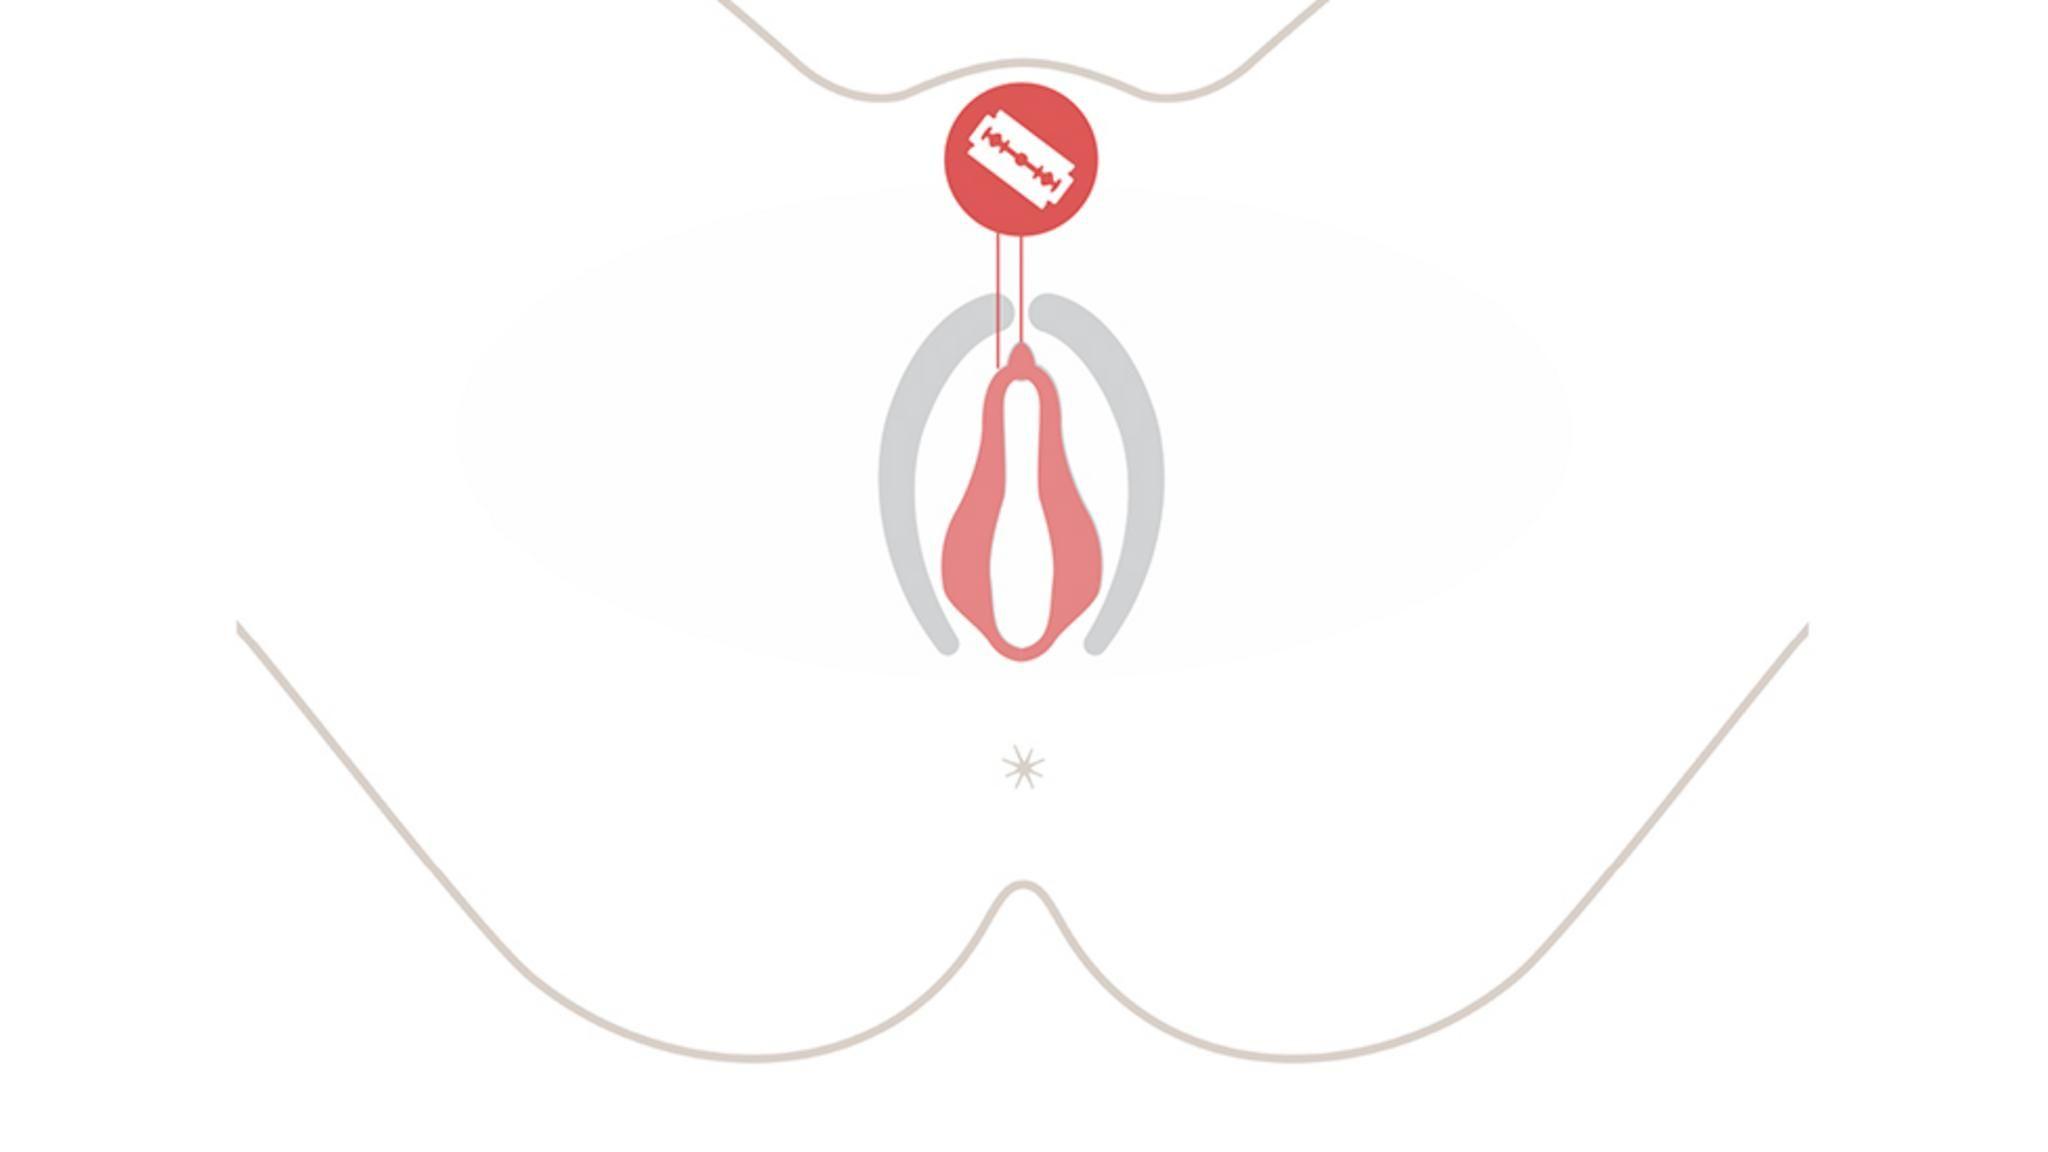 Gráfico sobre una escisión genital femenina.